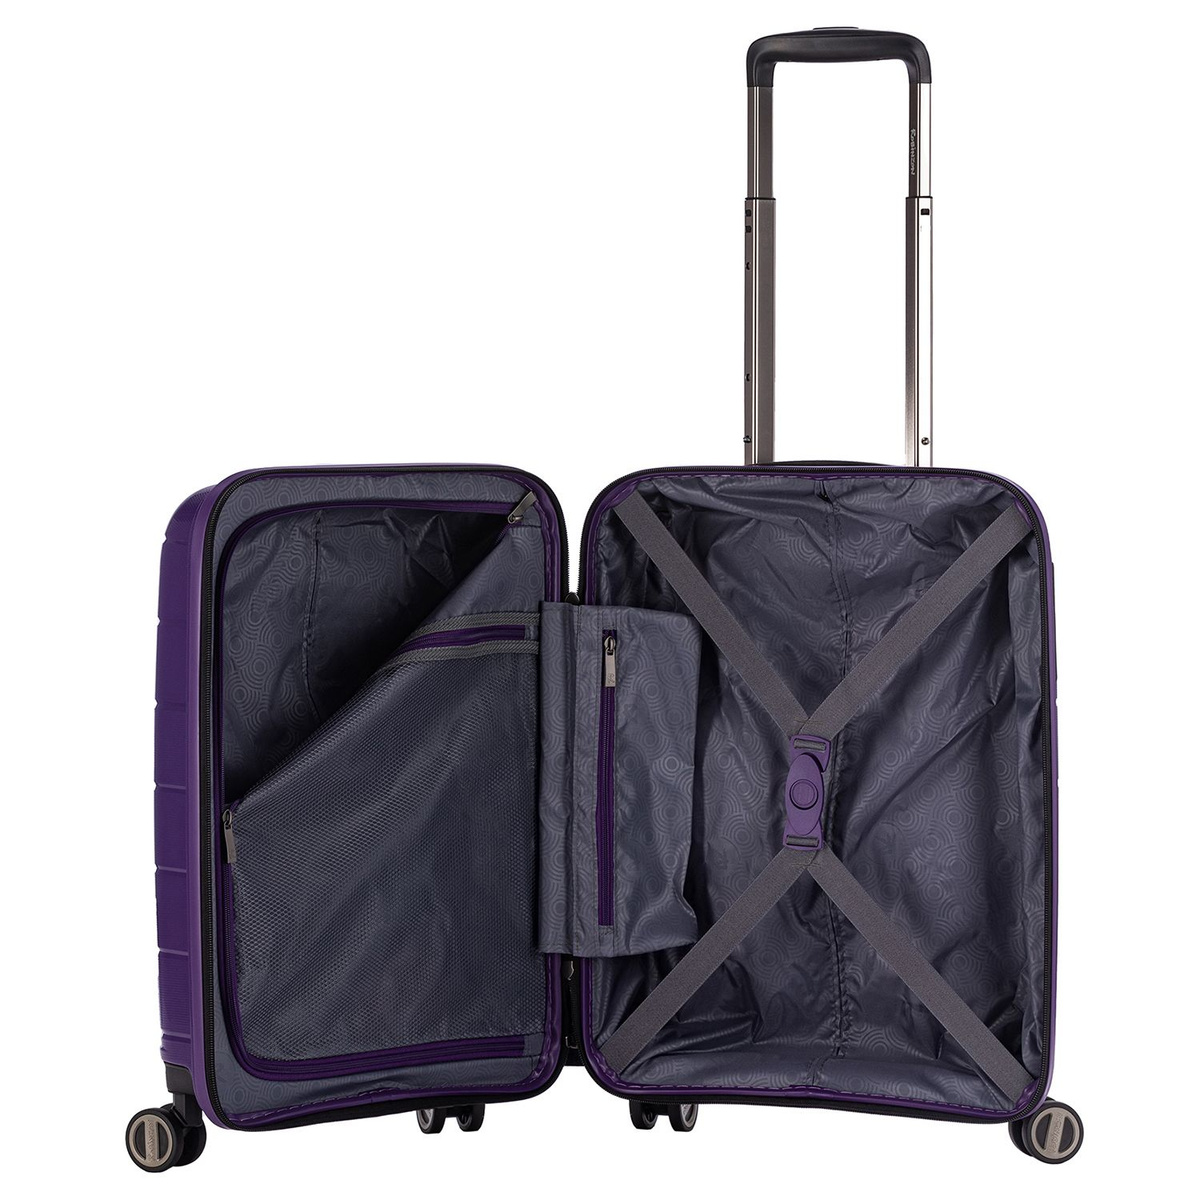 Удобная организация с прижимными ремнями, разделителем на молнии и двумя карманами позволит аккуратно упаковать необходимые для путешествия вещи.